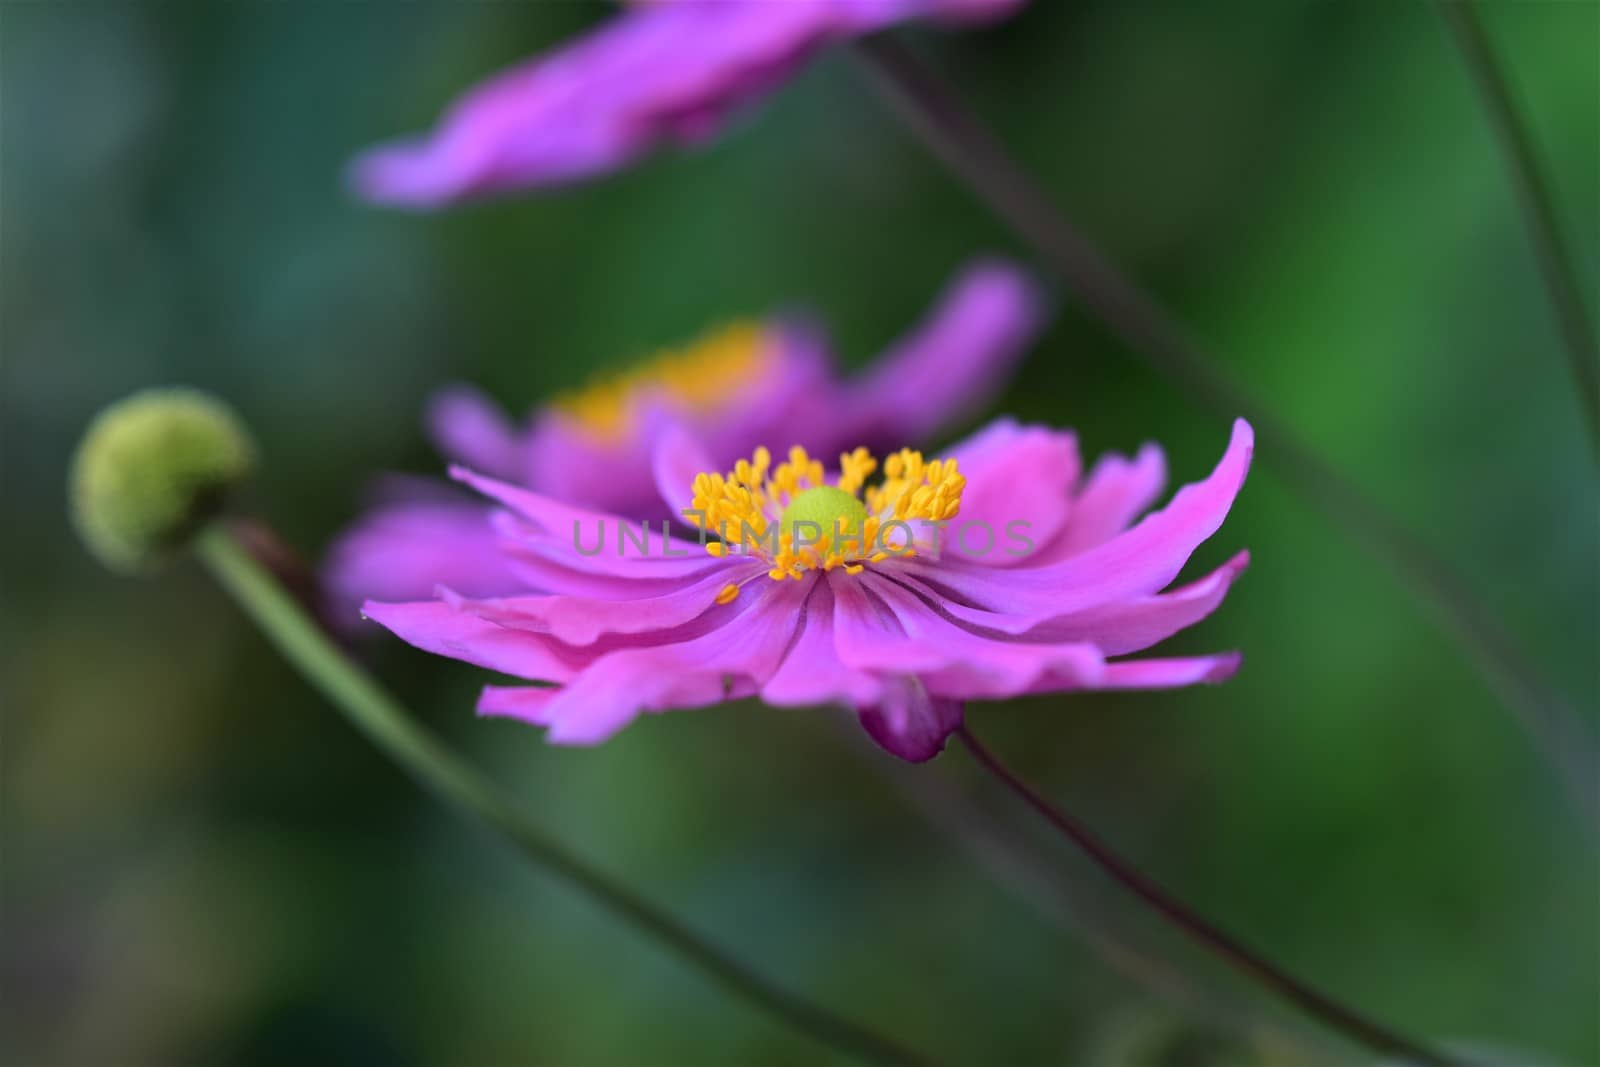 Closeup of an autumn anemone flower